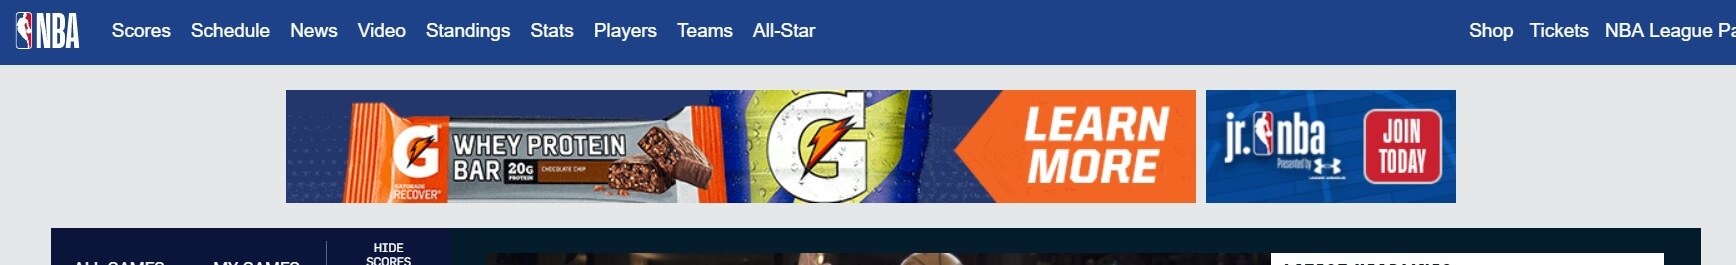 Ein Beispiel für ein Werbebanner auf der NBA-Homepage